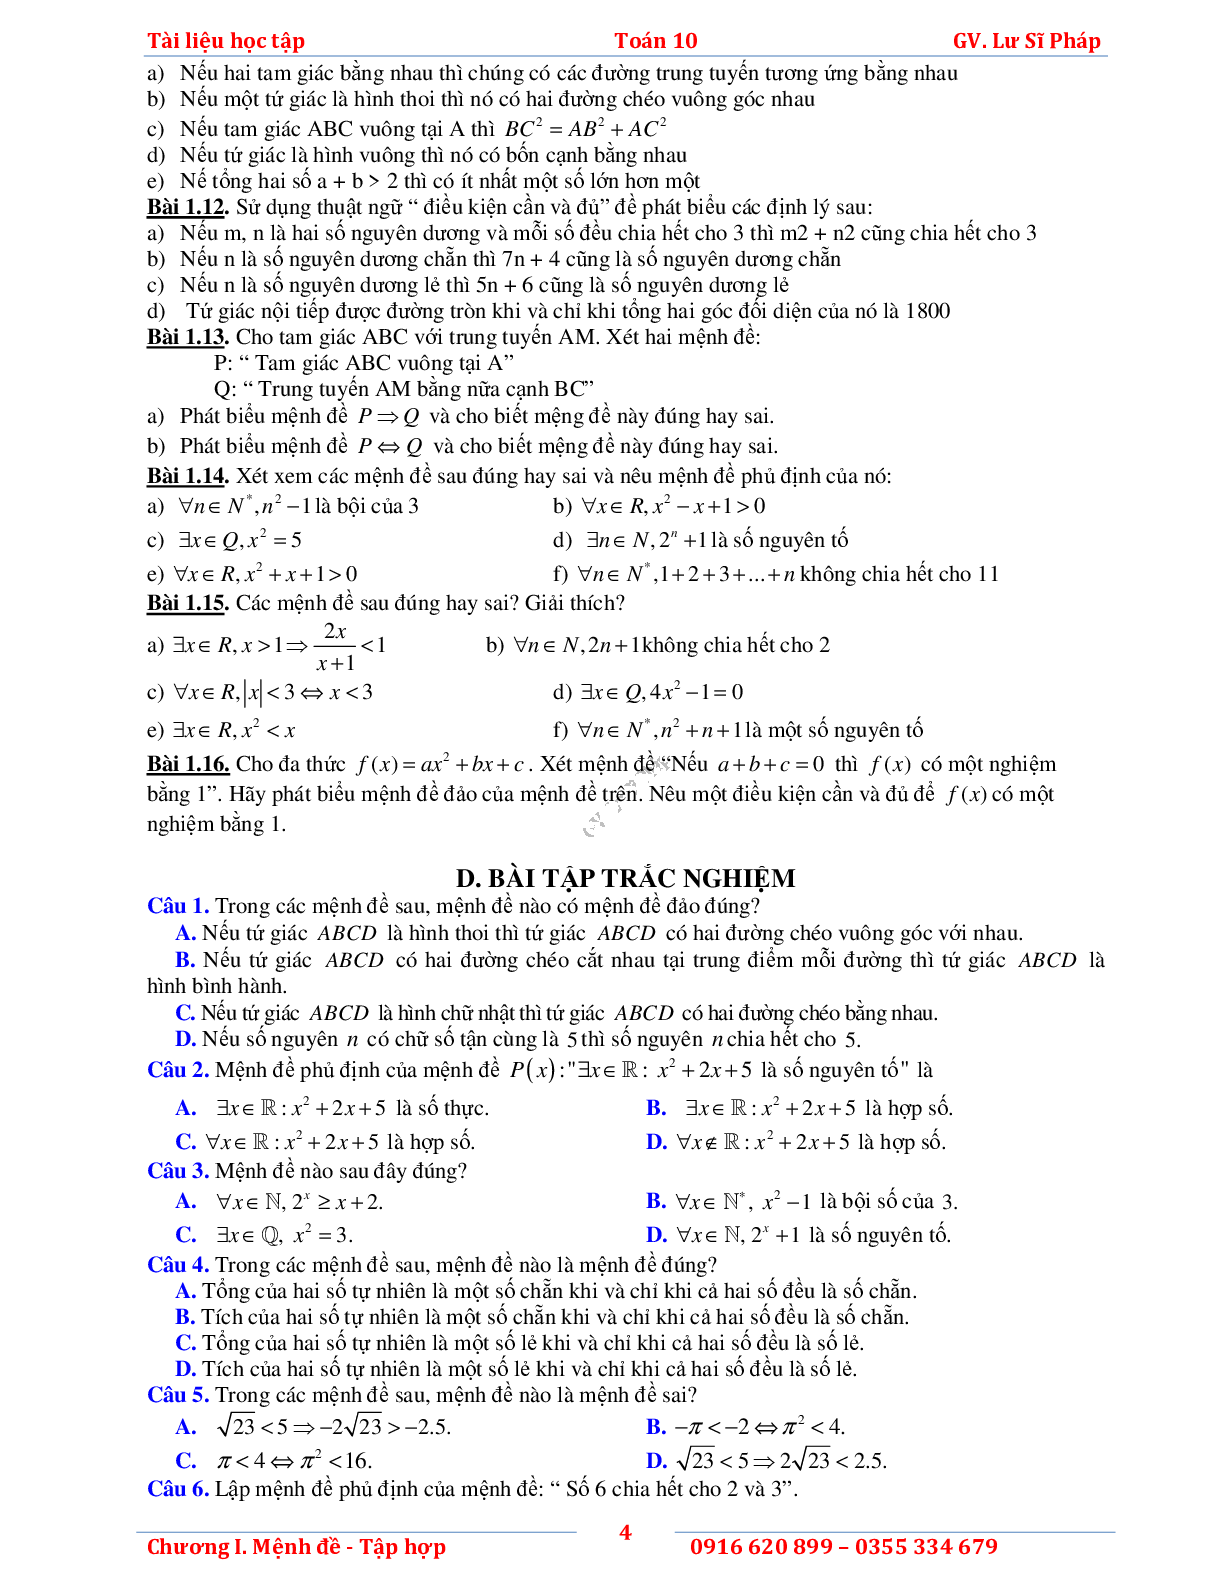 Tài liệu học tập phần Mệnh đề và tập hợp - phần 1 (trang 8)